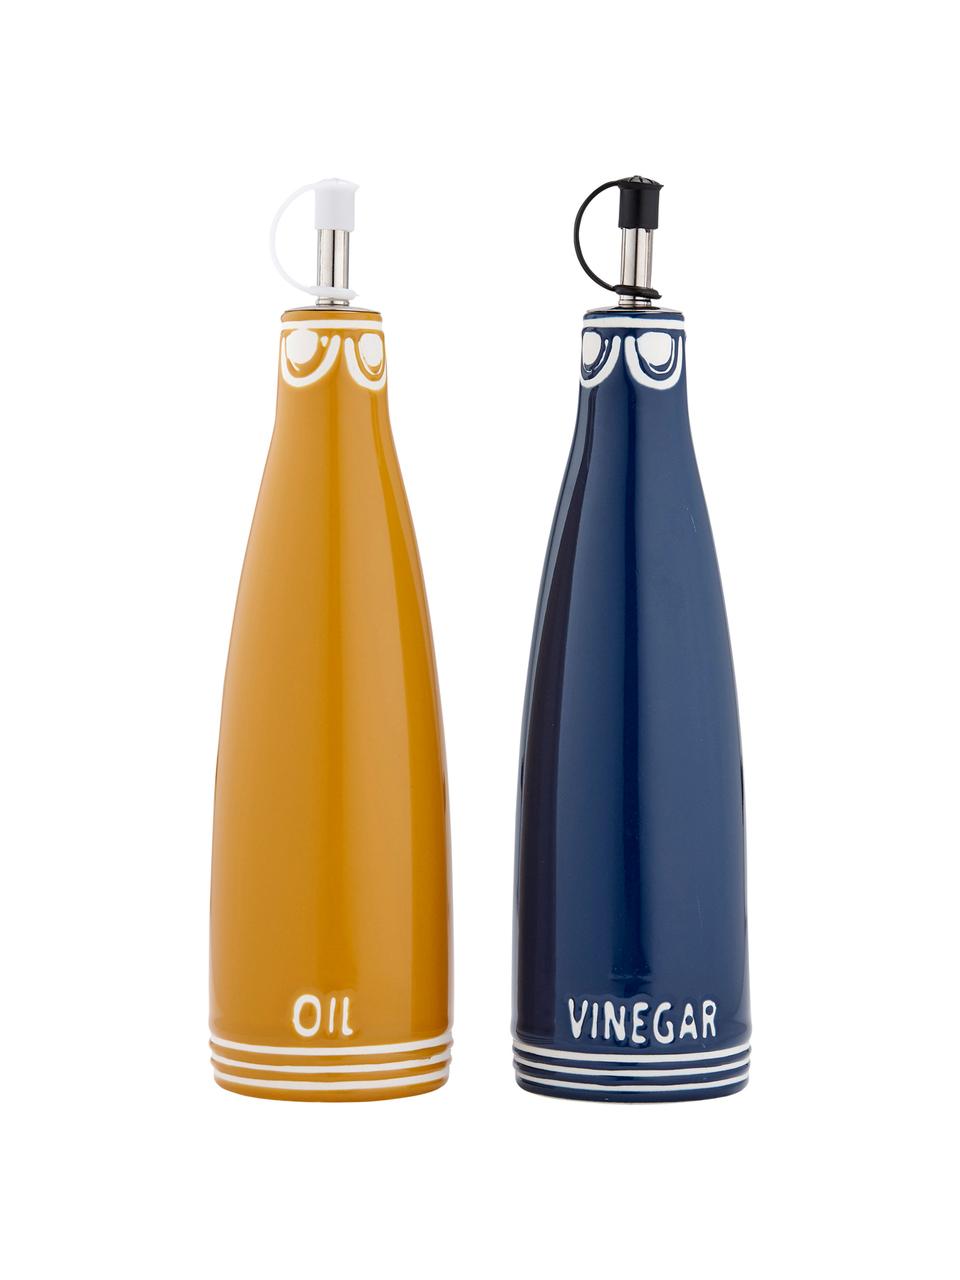 Distributeurs de vinaigre et huile Villa, 2 élém., Jaune, bleu